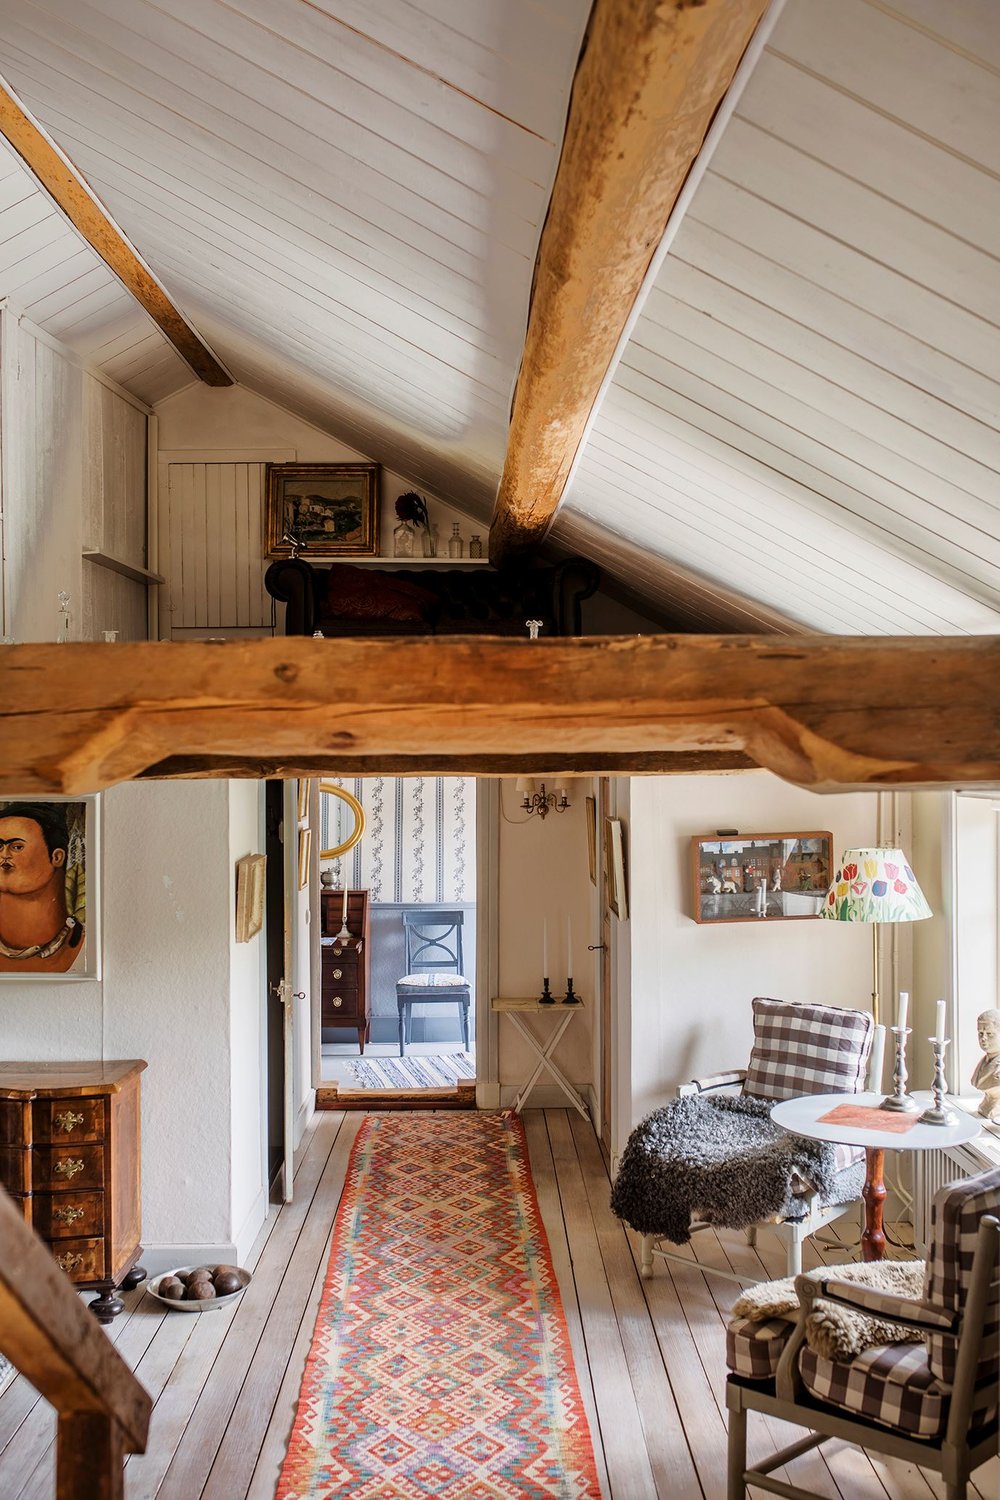 soffitto con travi in legno - chiccacasa - travi in legno in una casa country